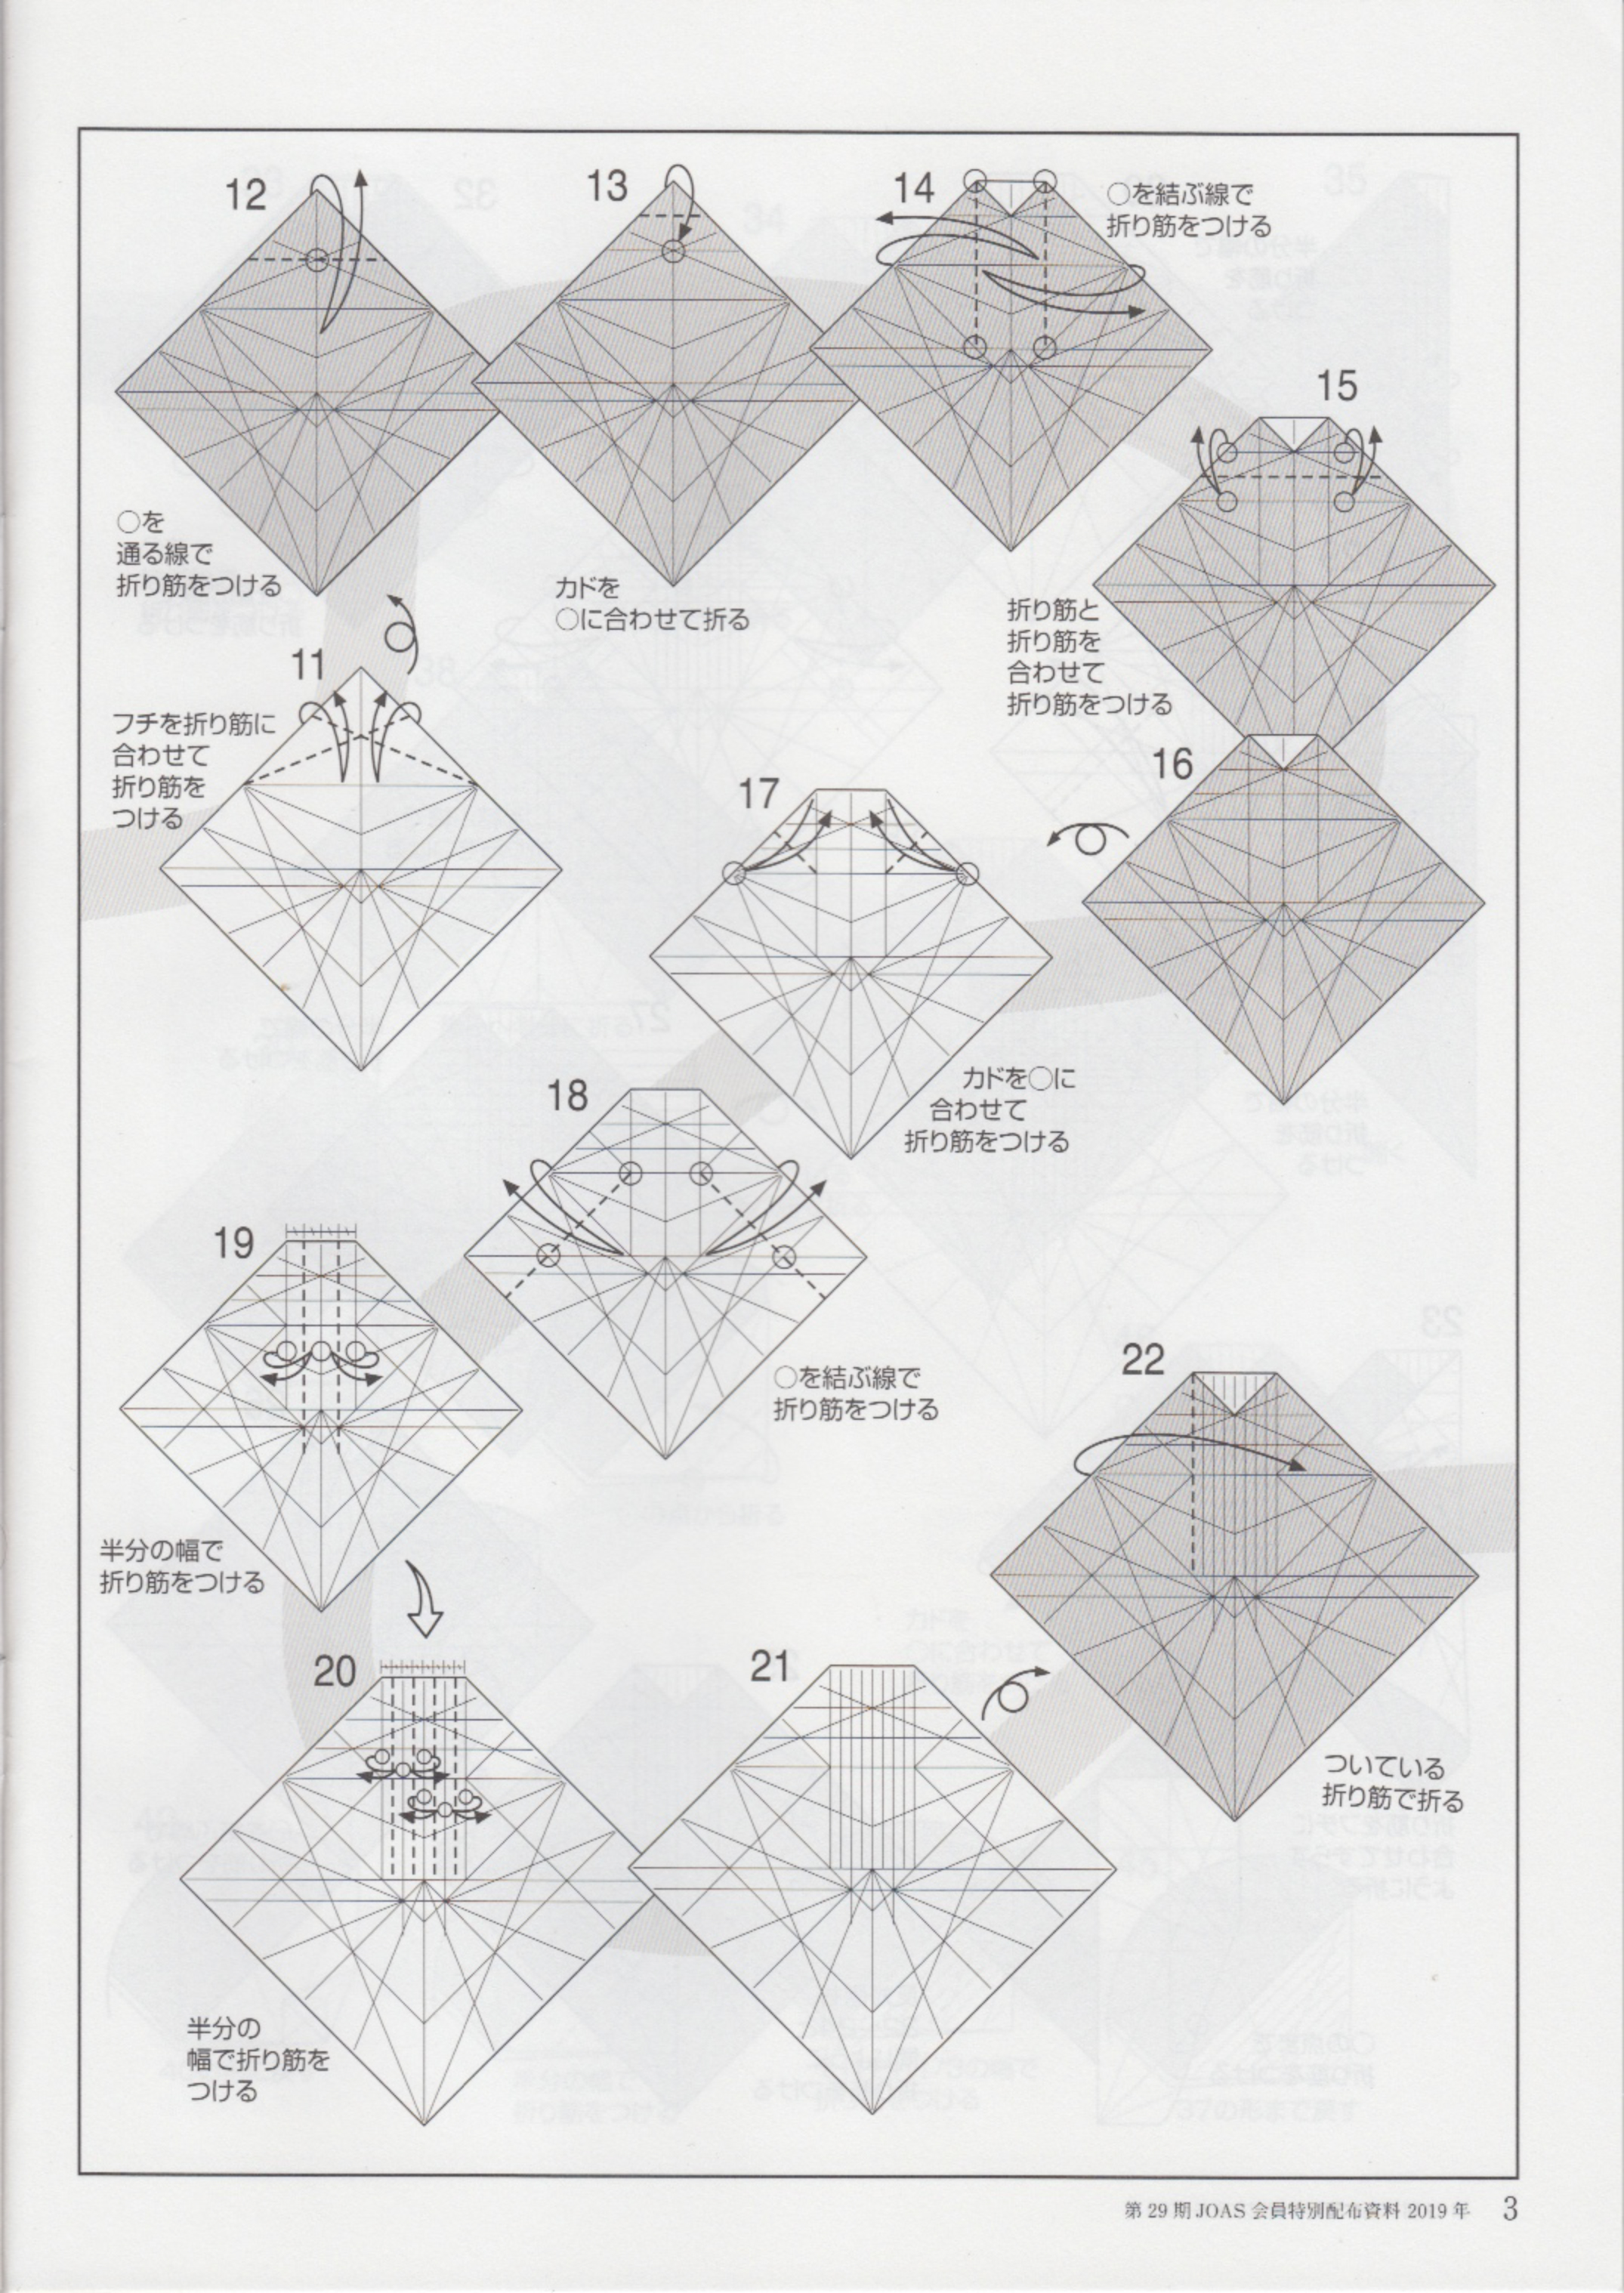 【折纸教程】神谷-翼麒麟